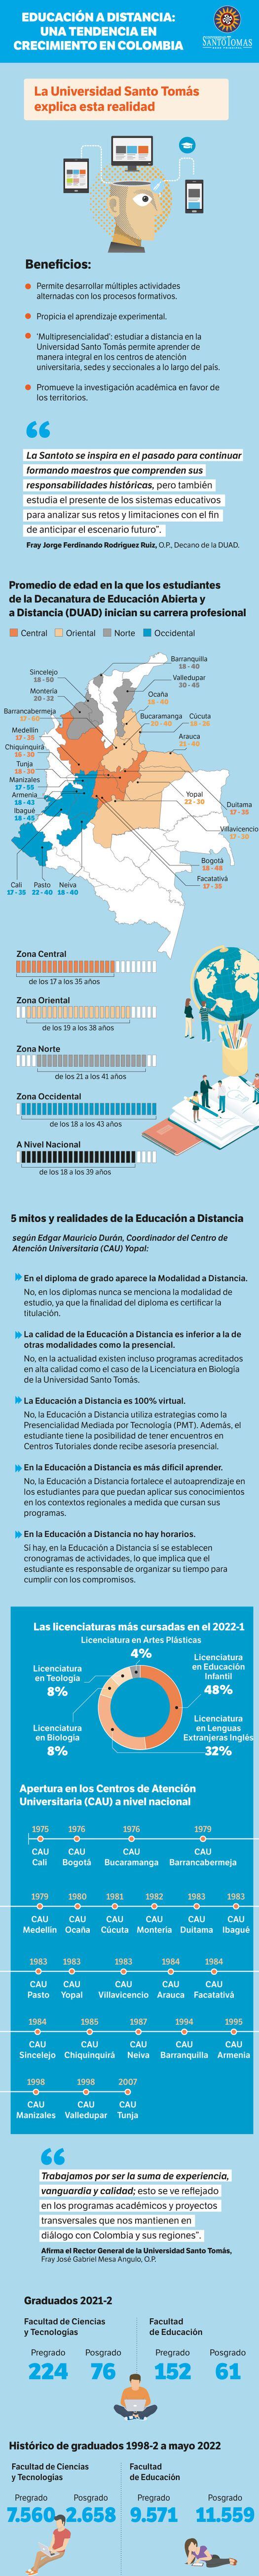 Educación a distancia: una tendencia en crecimiento en Colombia 